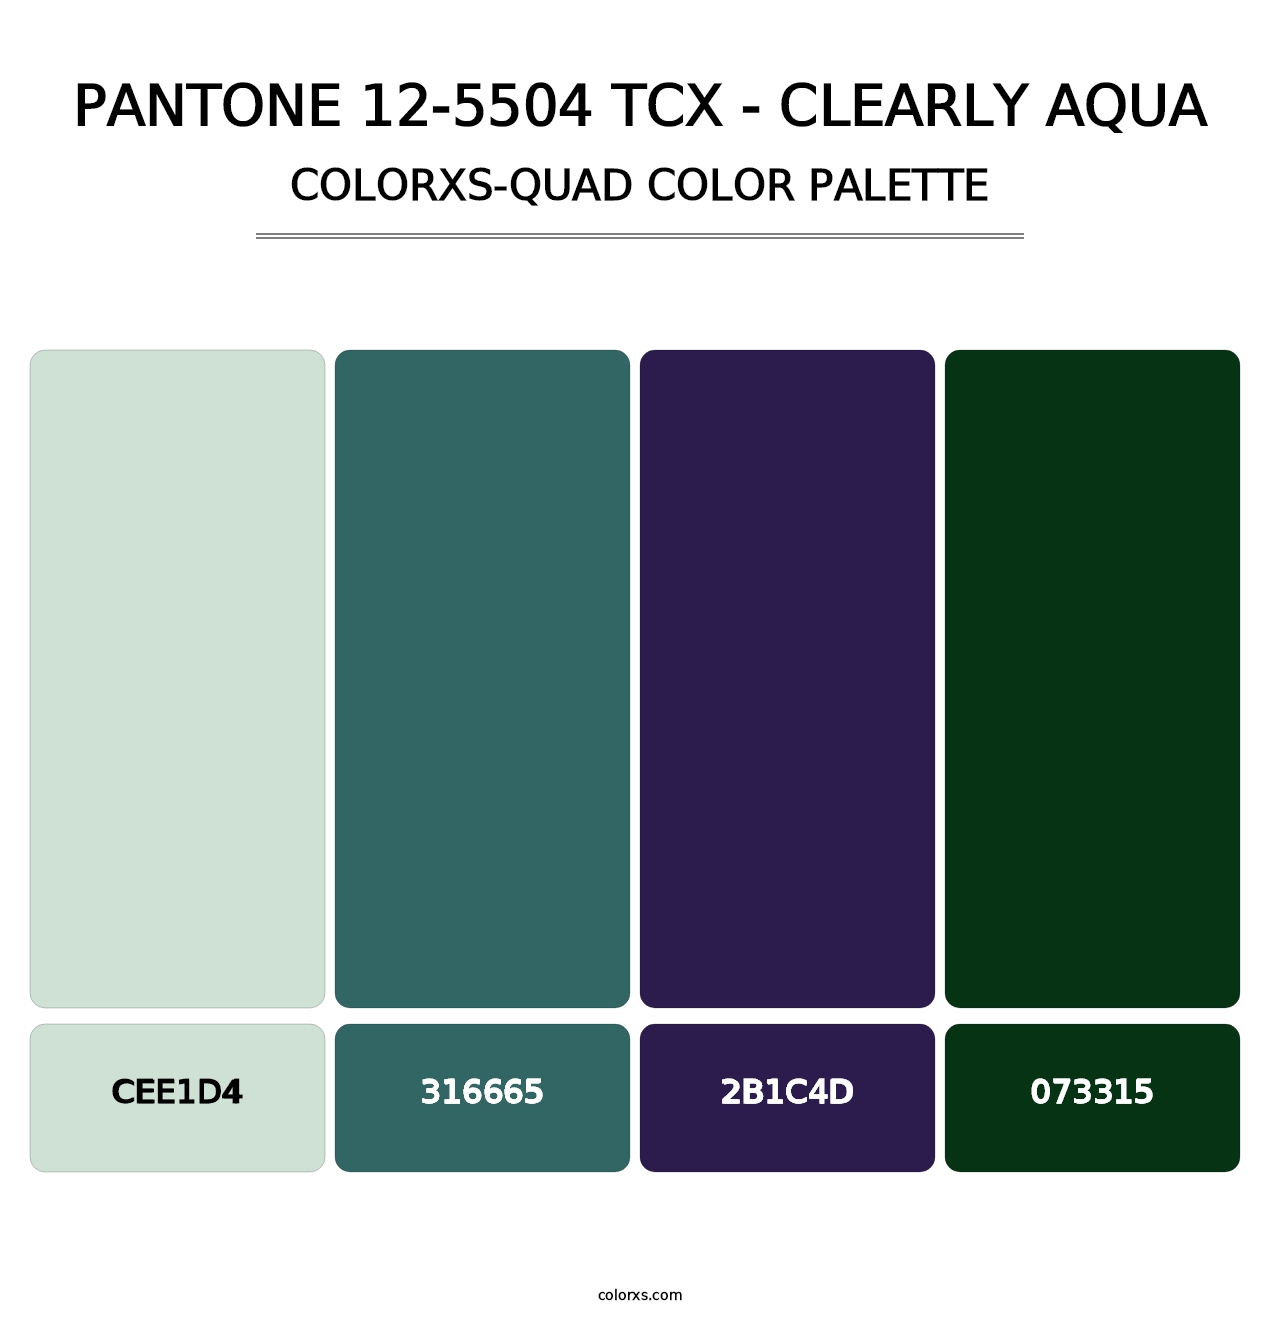 PANTONE 12-5504 TCX - Clearly Aqua - Colorxs Quad Palette